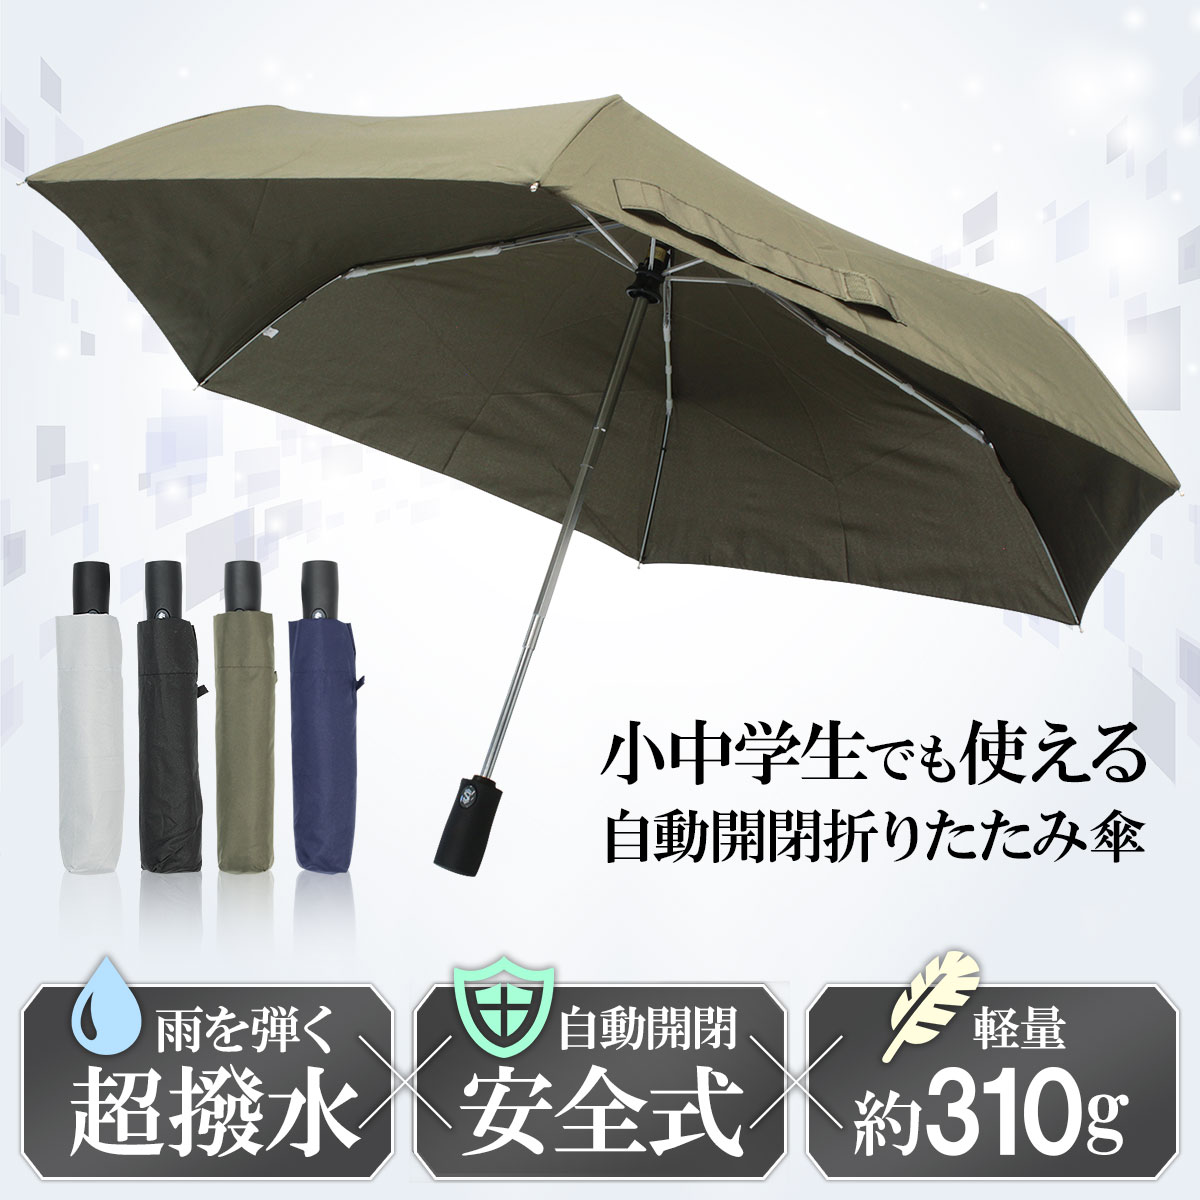 【送料無料】【55cm】折りたたみ傘 子供用にも最適 ワンタッチ 使いや...